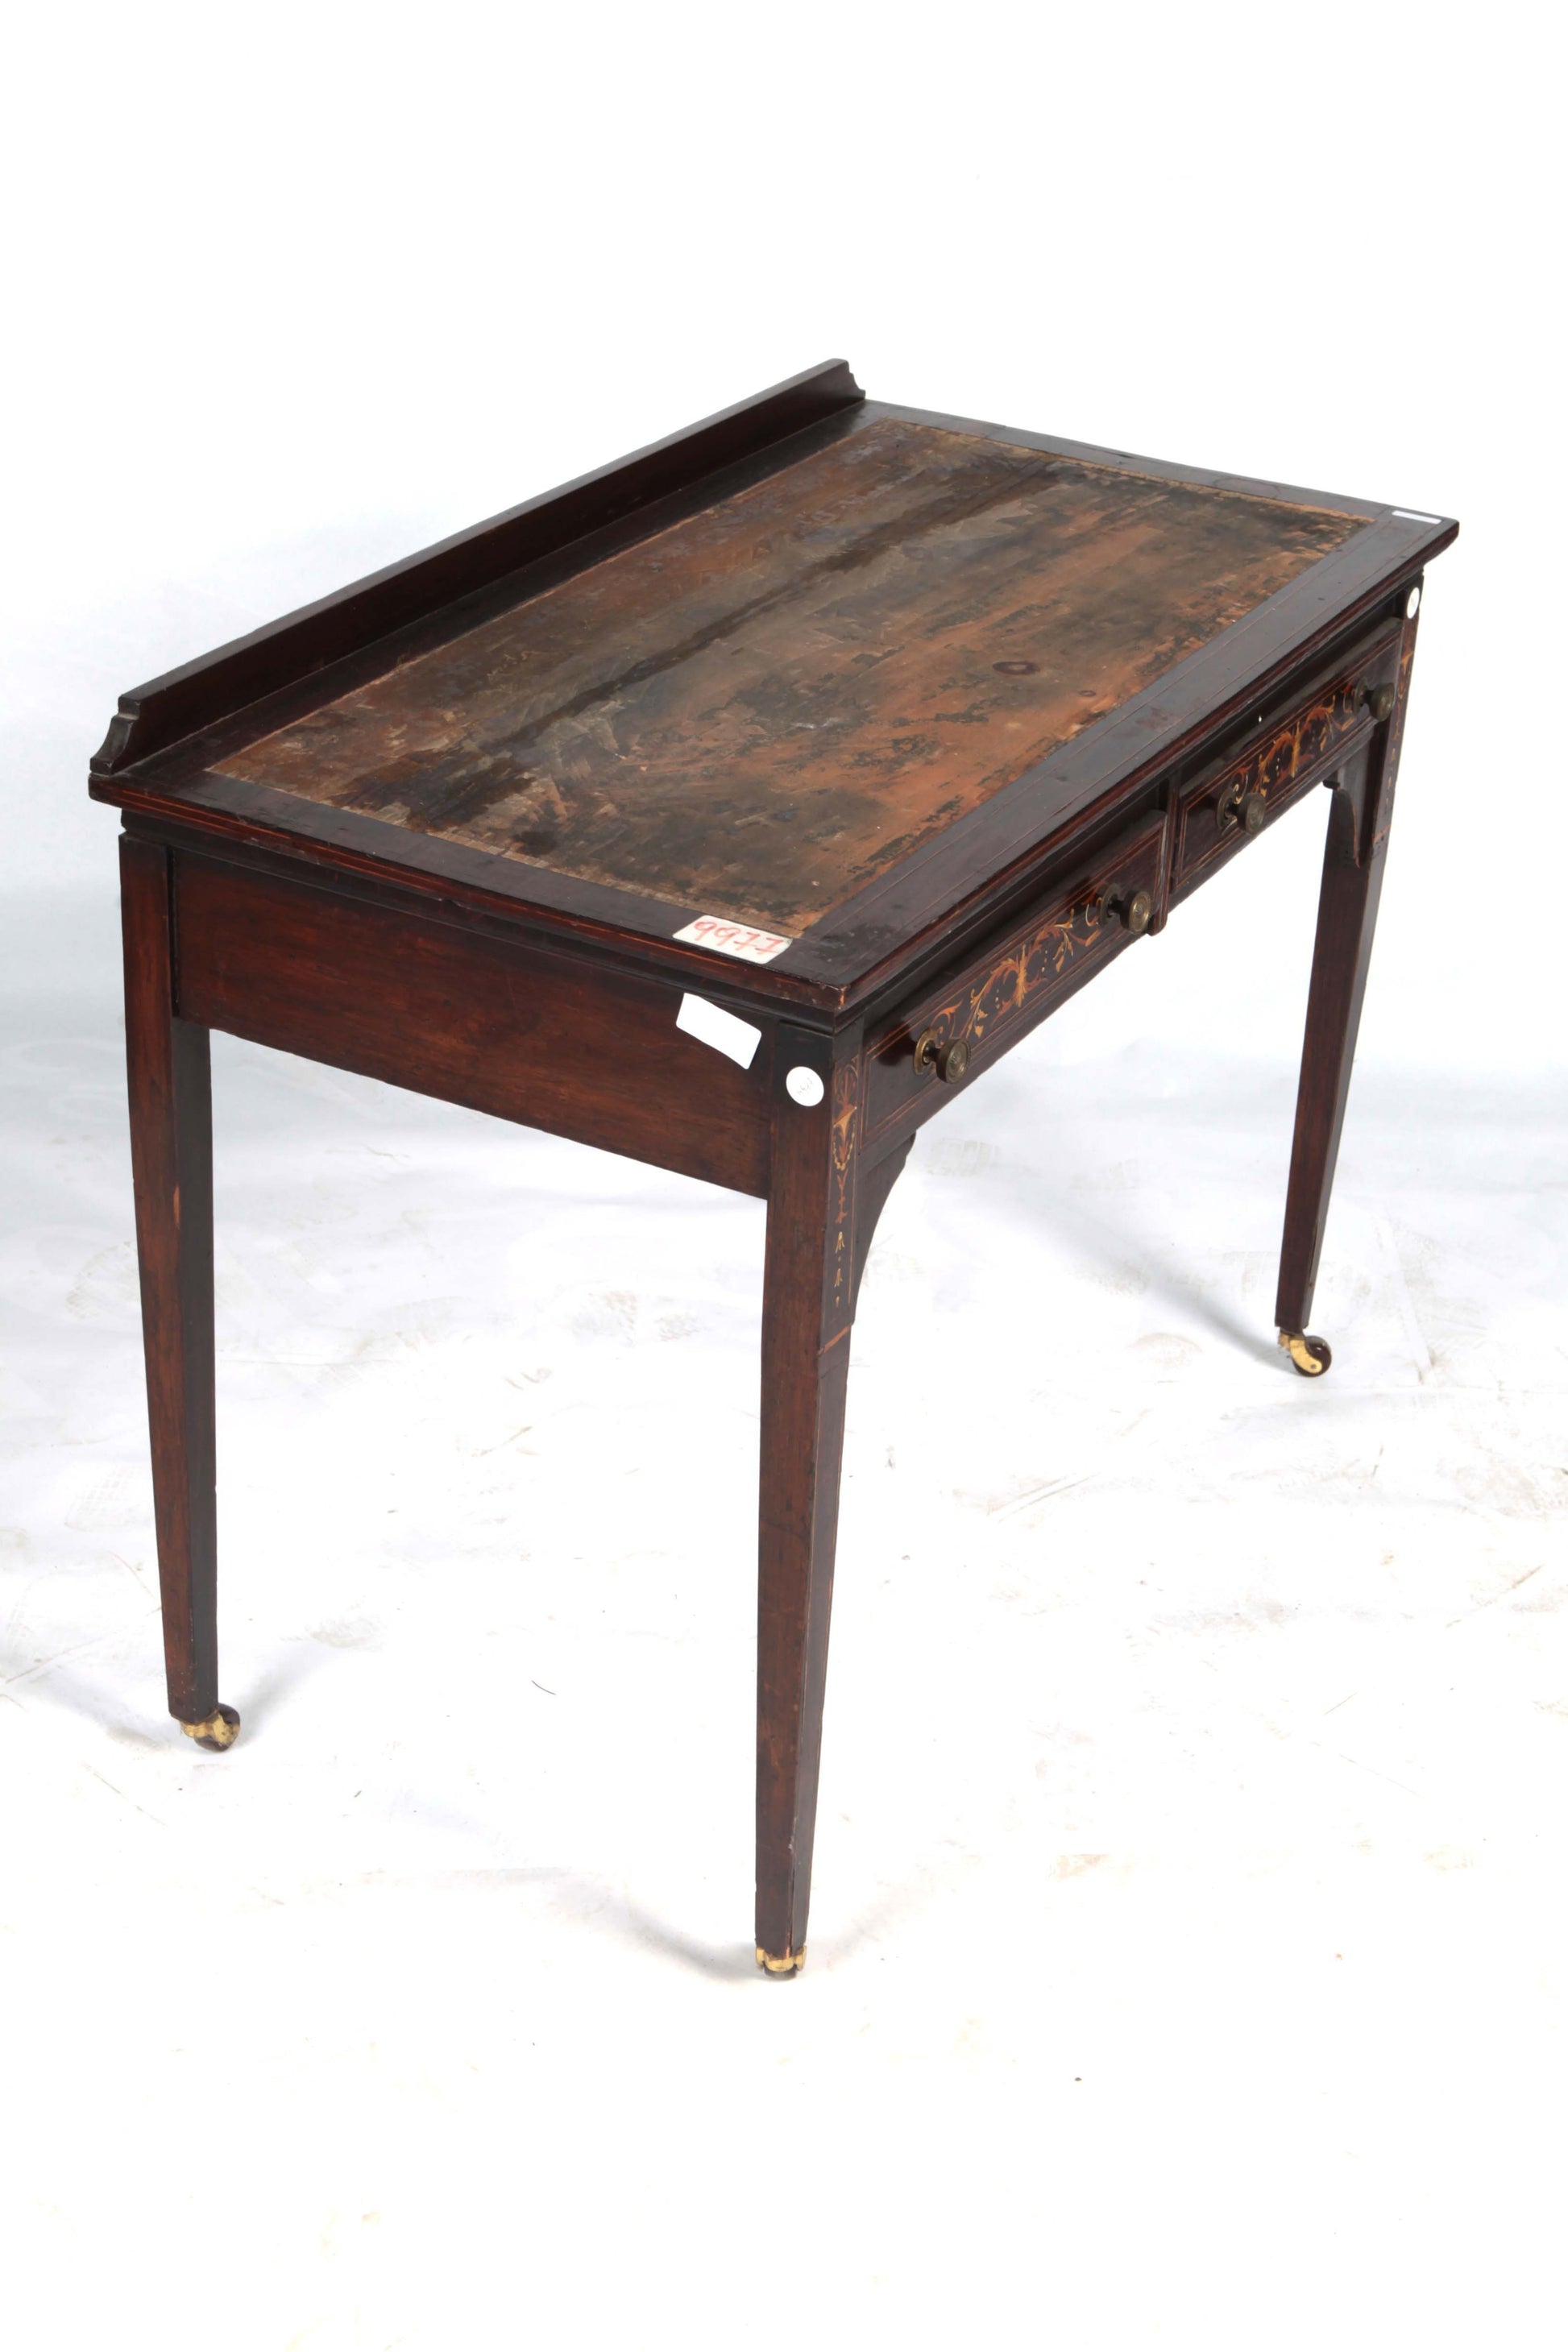 Antica piccola scrivania scrittoio inglese del 1800 stile Vittoriano con intarsi